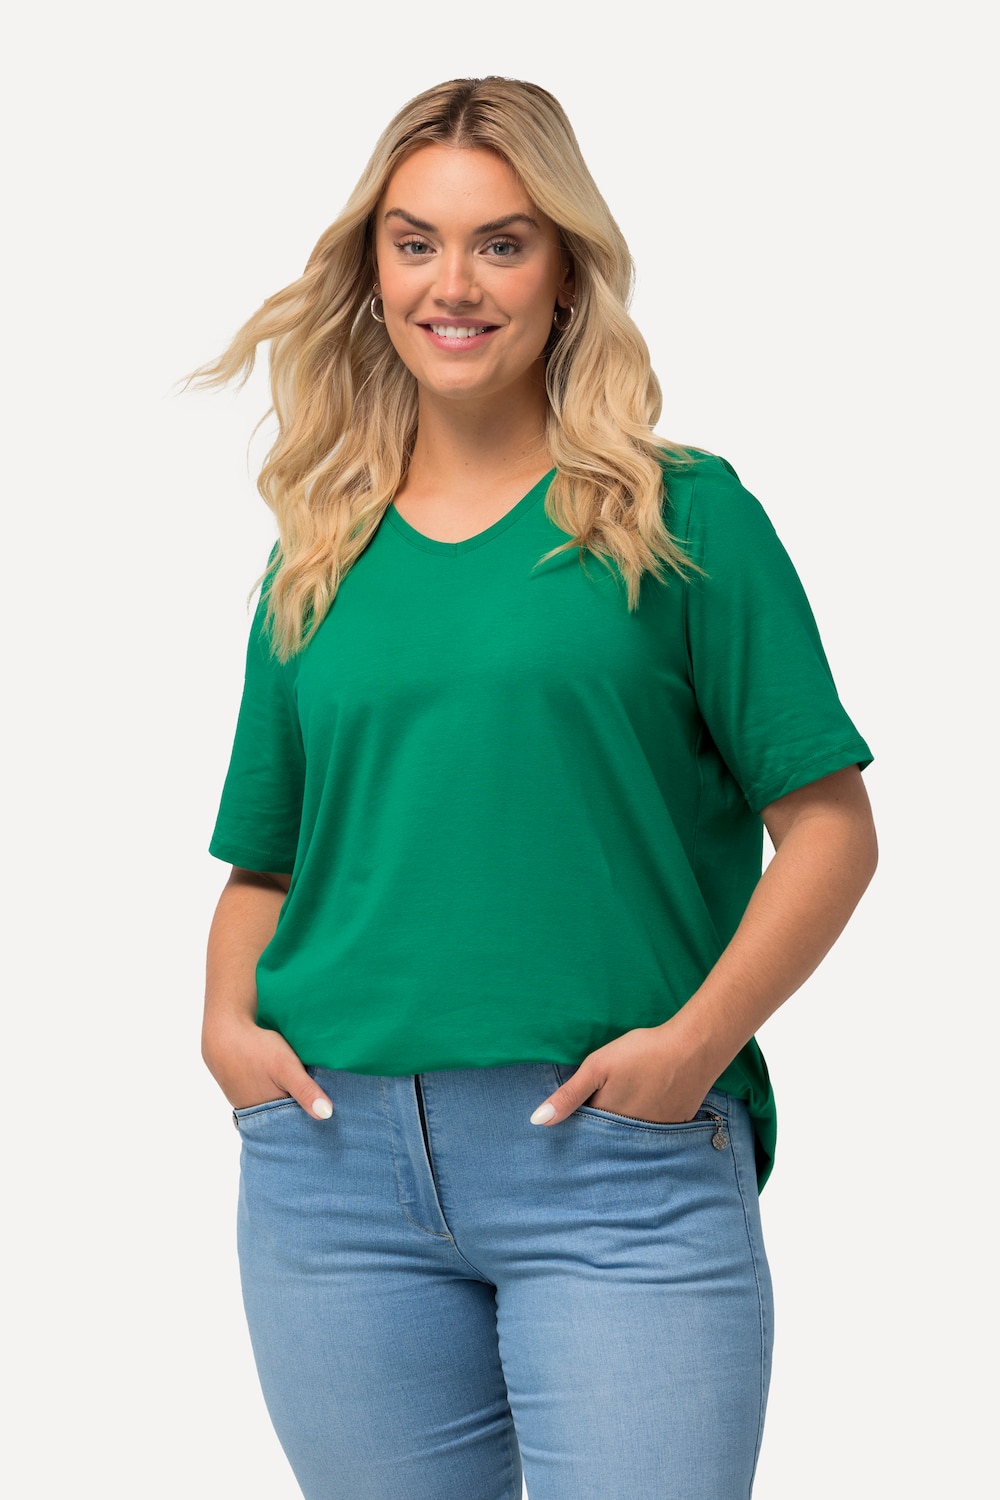 Grote Maten T-shirt, Dames, groen, Maat: 50/52, Katoen, Ulla Popken